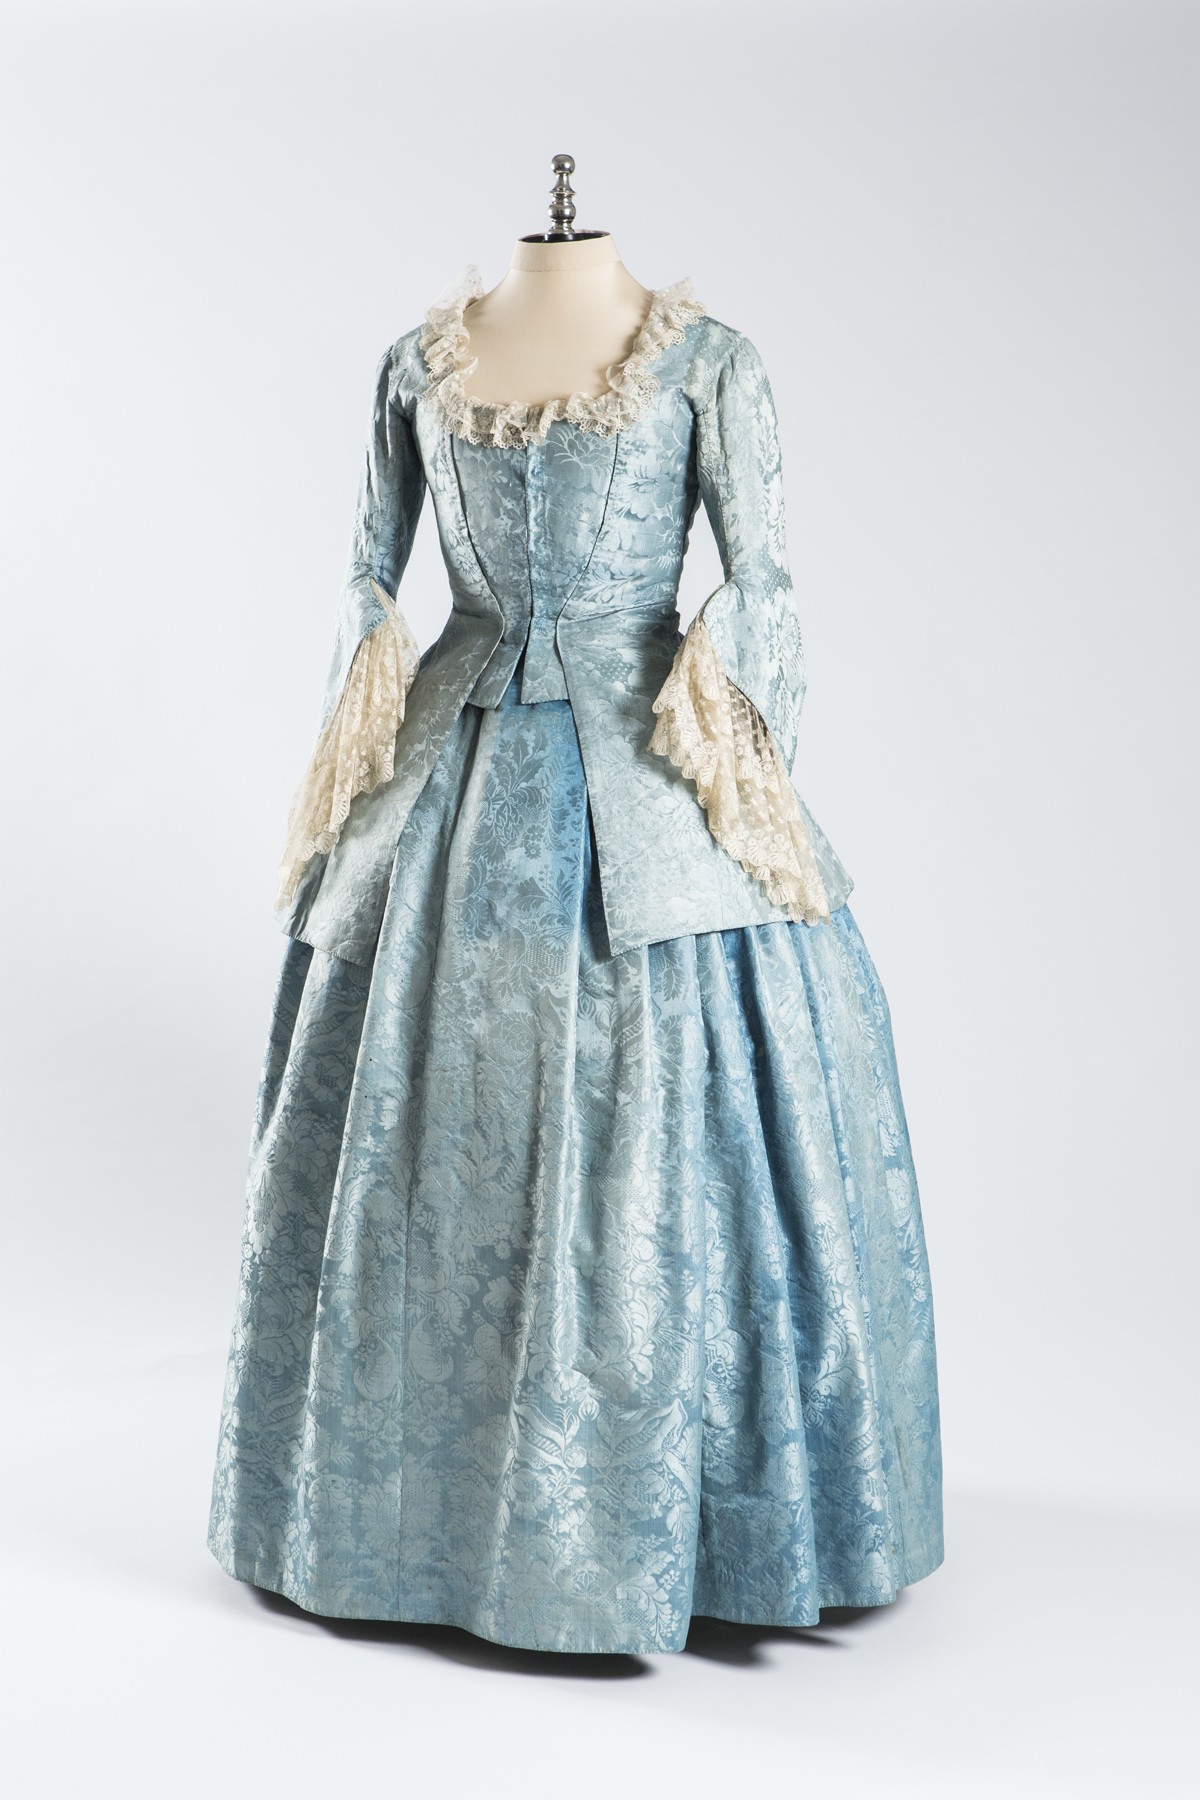 Damenkleid „Wasserblau“ von Josefine Jordan (Historisches Museum der Pfalz, Speyer CC BY)